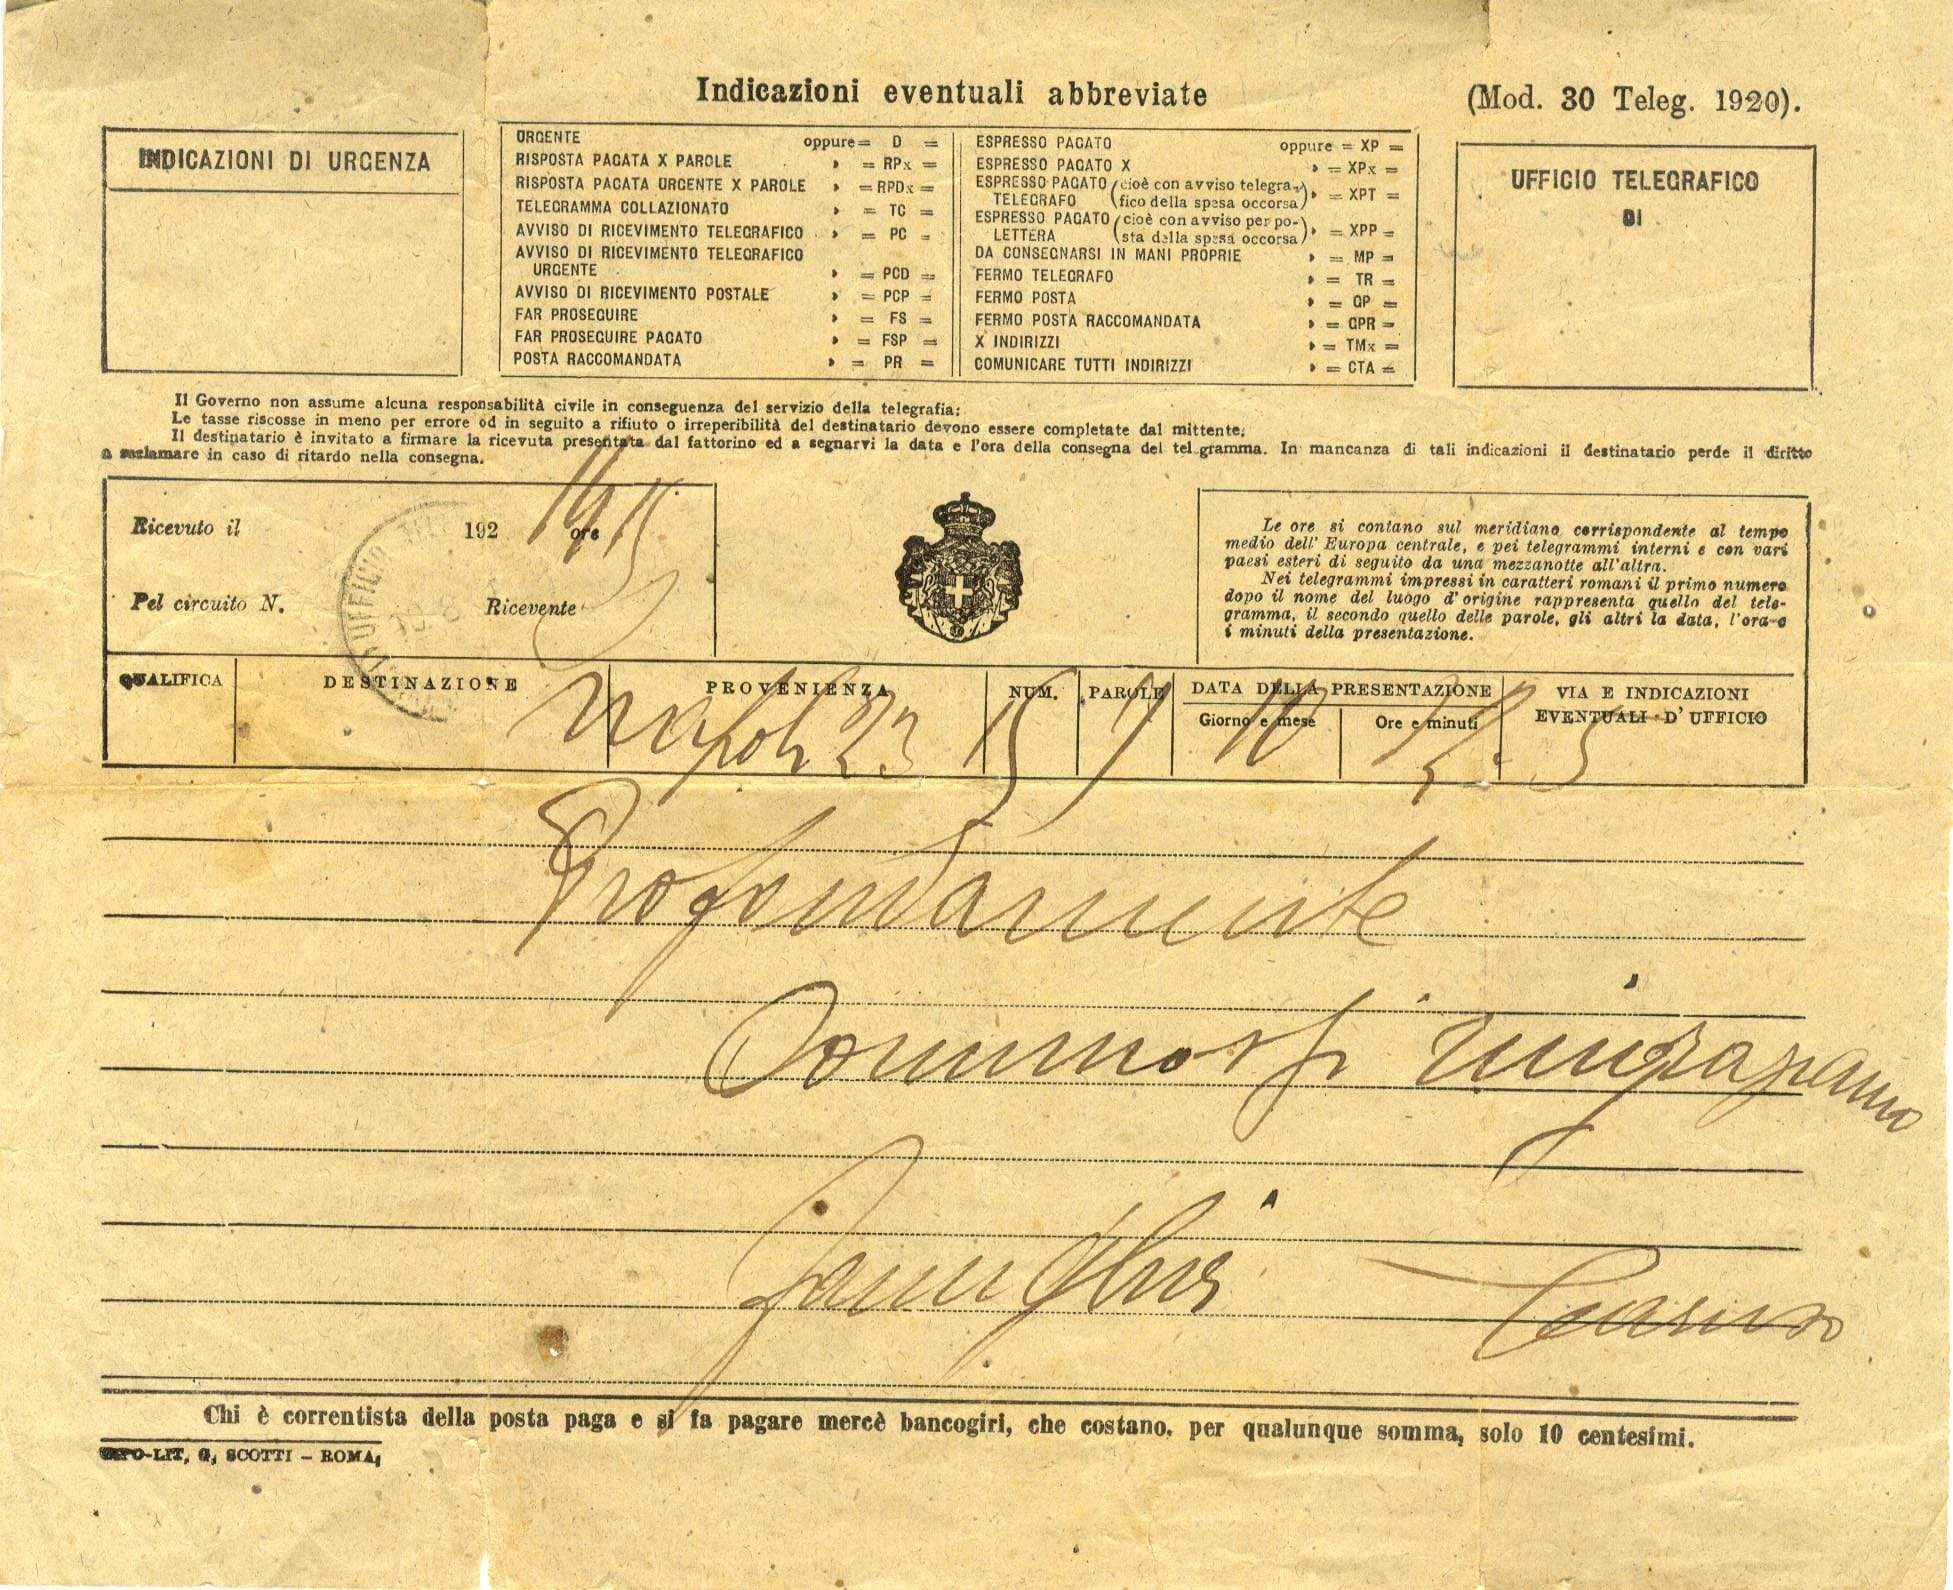 Enrico Caruso Autograph Autogramm | ID 7213380599957